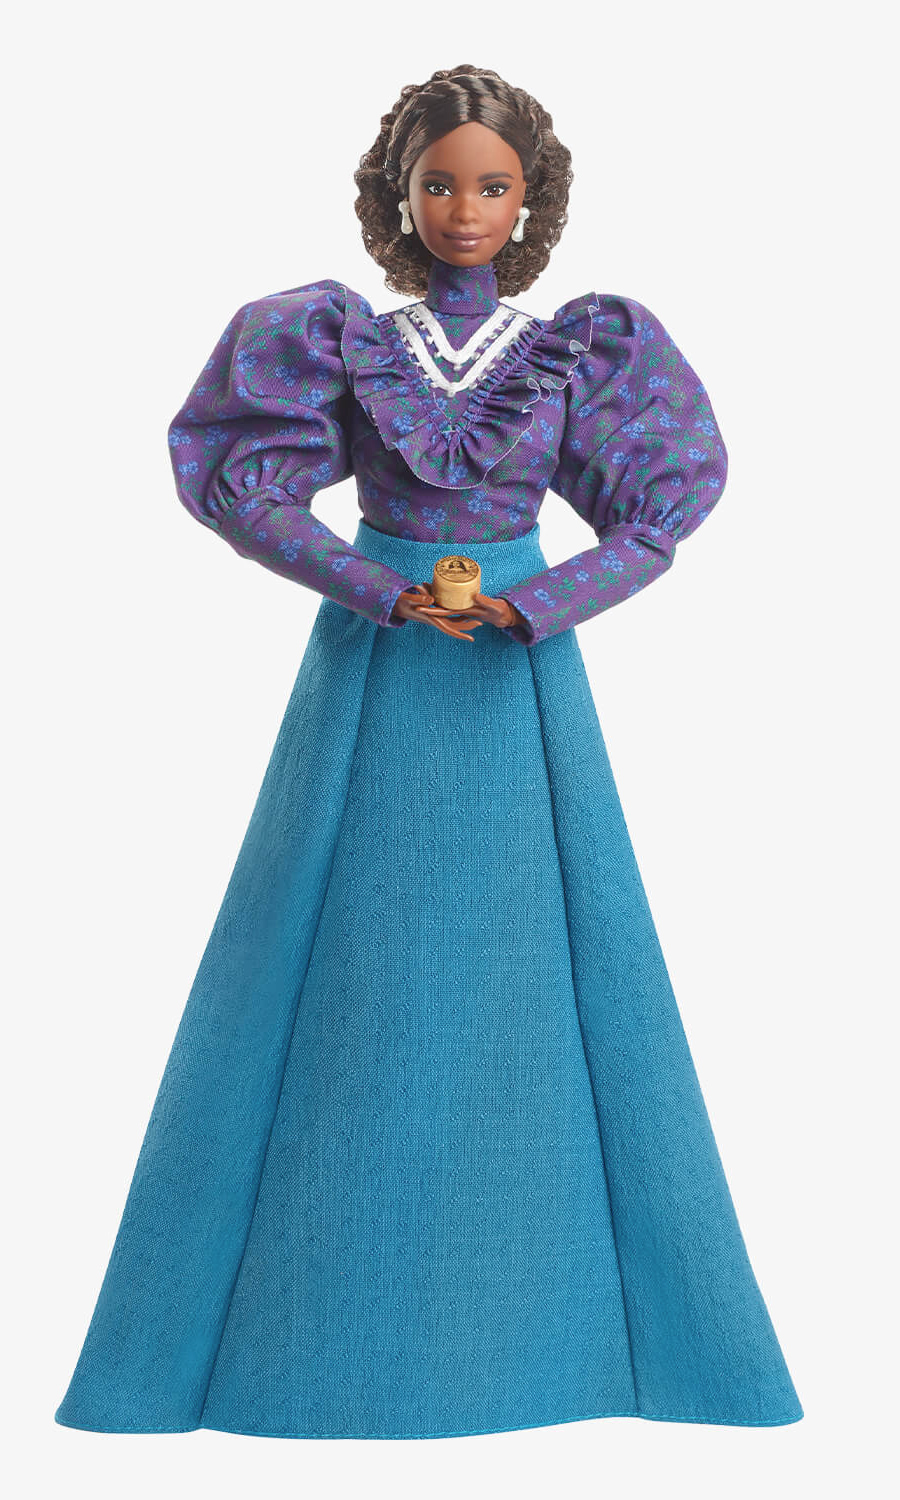 Barbie Inspiring Women: Madam C. J. Walker, a Primeira Mulher Milionária